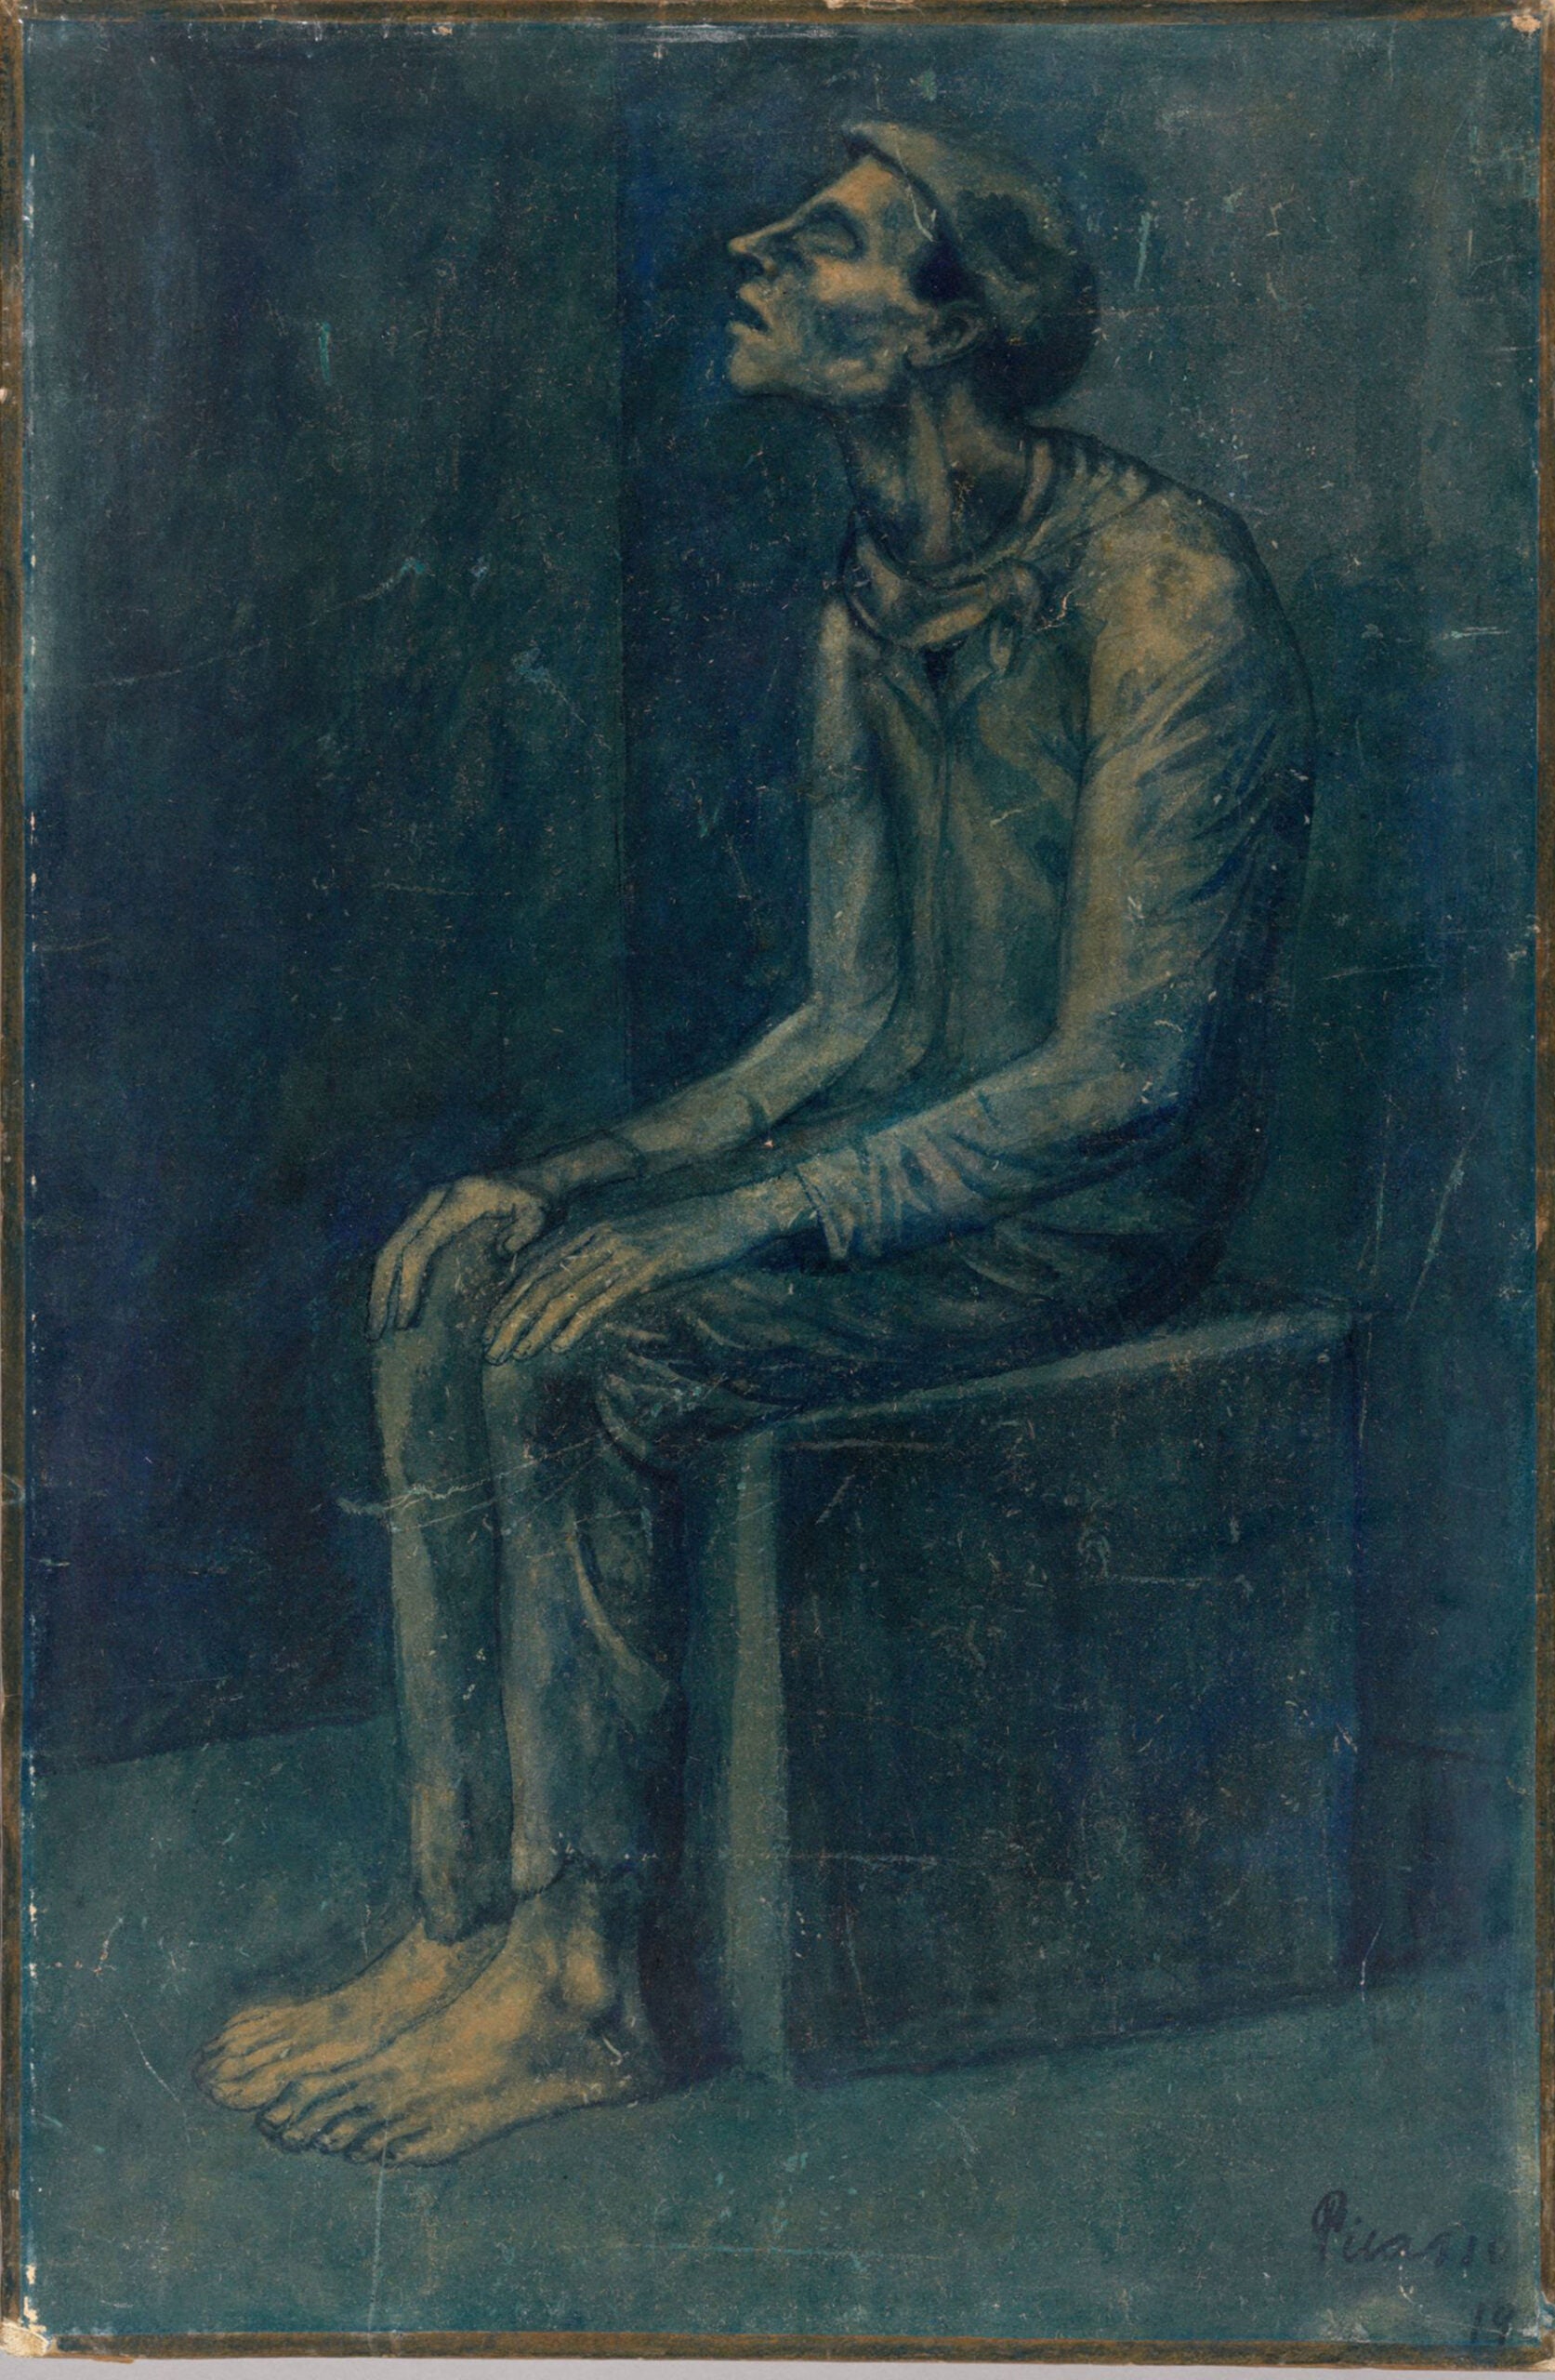 Pablo Ruiz Picasso, The Blind Man, 1903.